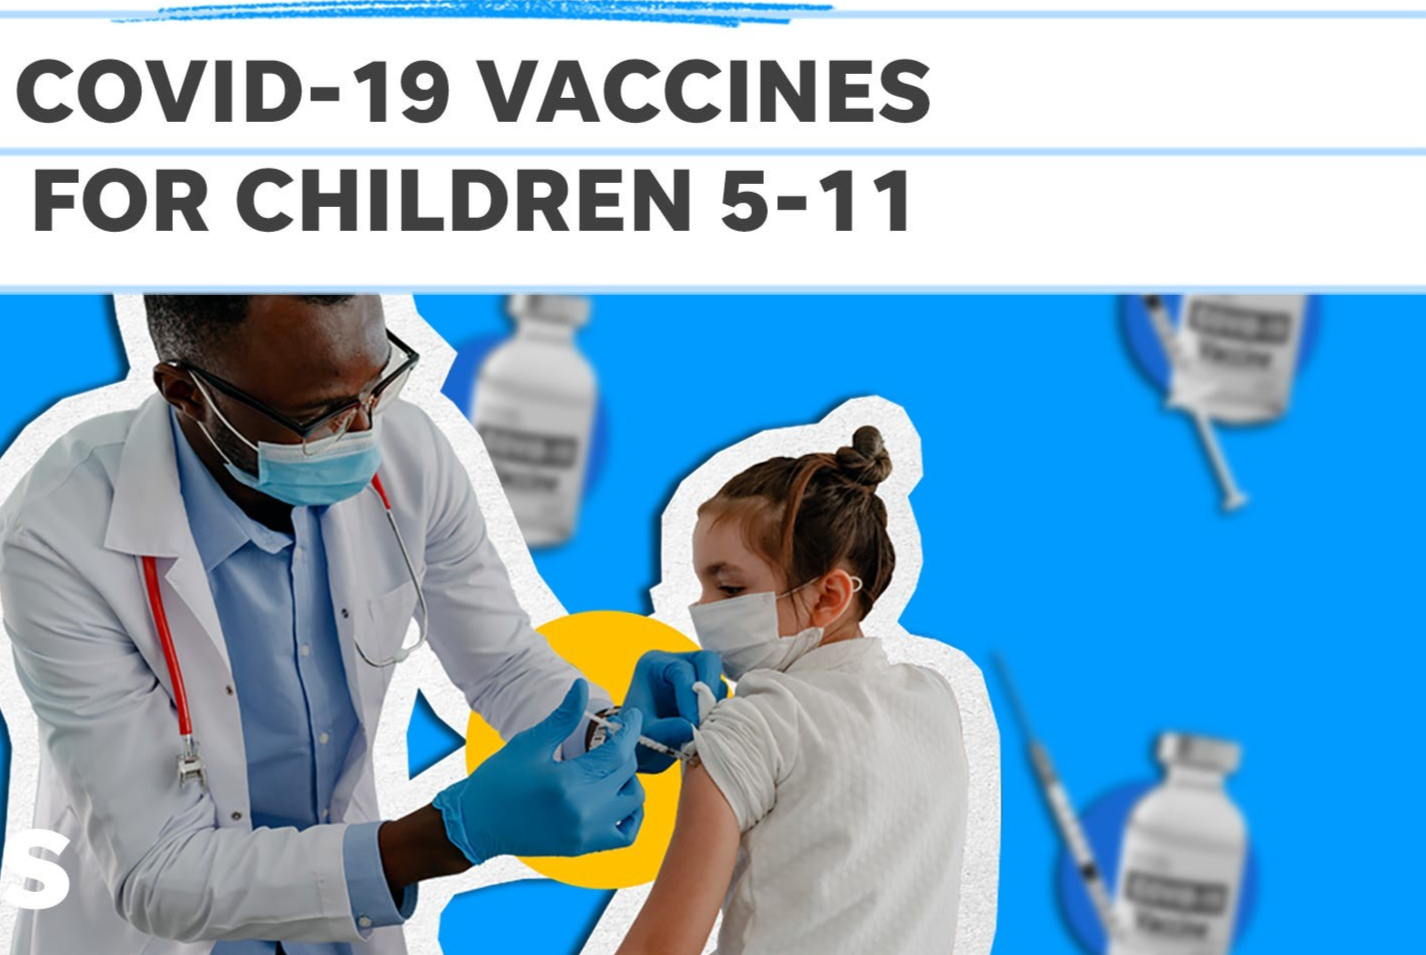 Covid-19: Hàng loạt quốc gia ra quyết định liên quan tiêm chủng cho trẻ 5-11 tuổi, Israel quyết dùng liều thứ 3. (Nguồn: USA Today)